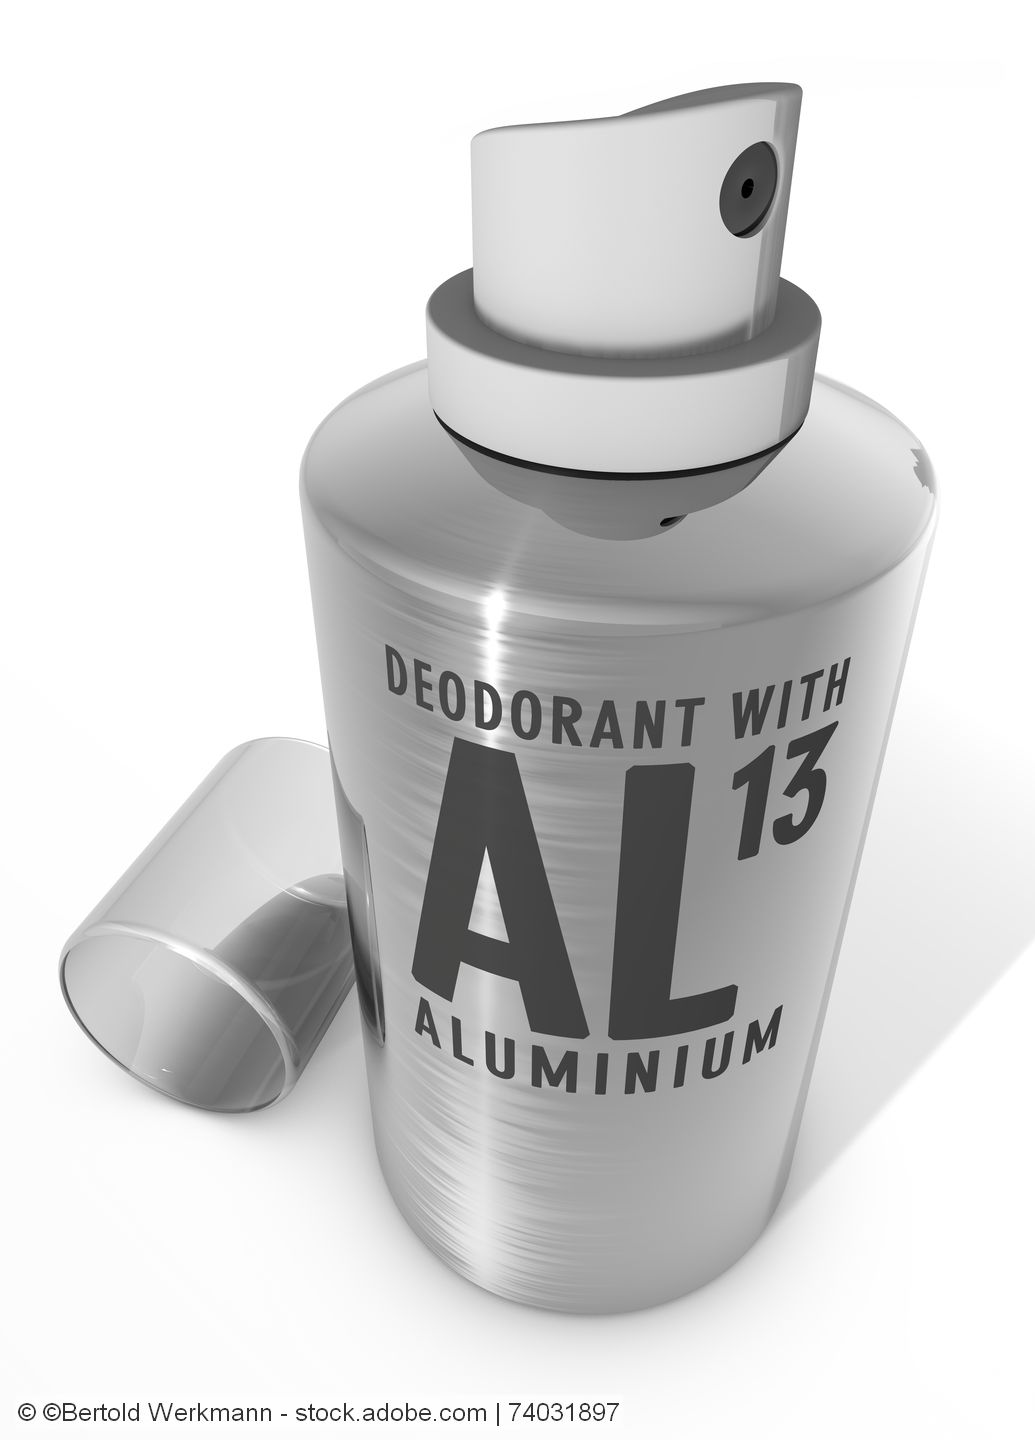 <div class="h7">Markt für Aluminiumverpackungen:</div> Sommersaison lässt Nachfrage nach Aerosoldosen steigen